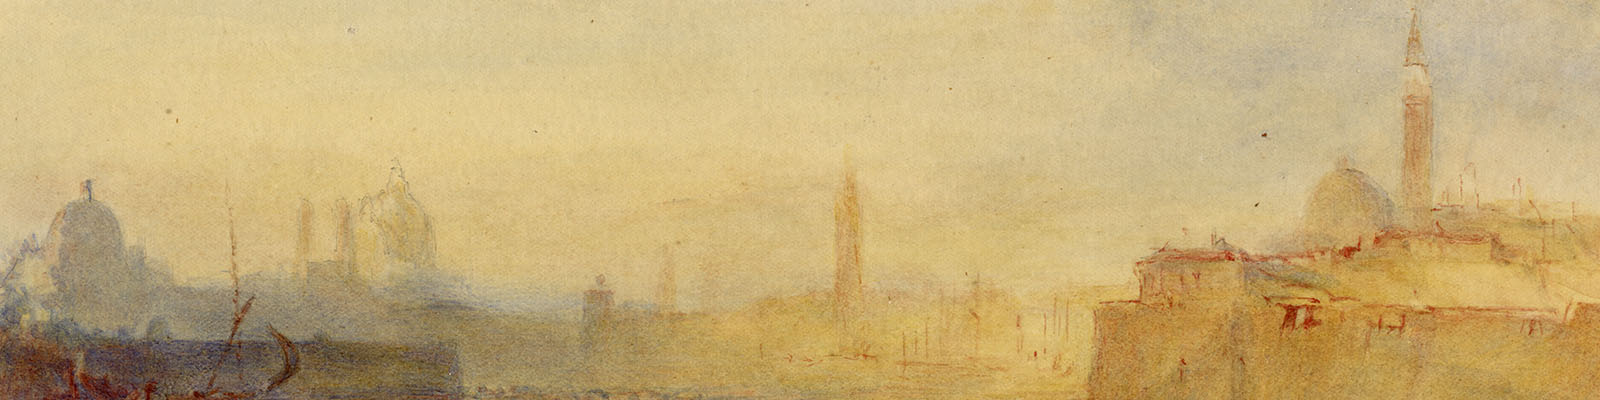 Isabella Jay, Venice: The Zitelle, Santa Maria della Salute, the Campanile and San Giorgio Maggiore 